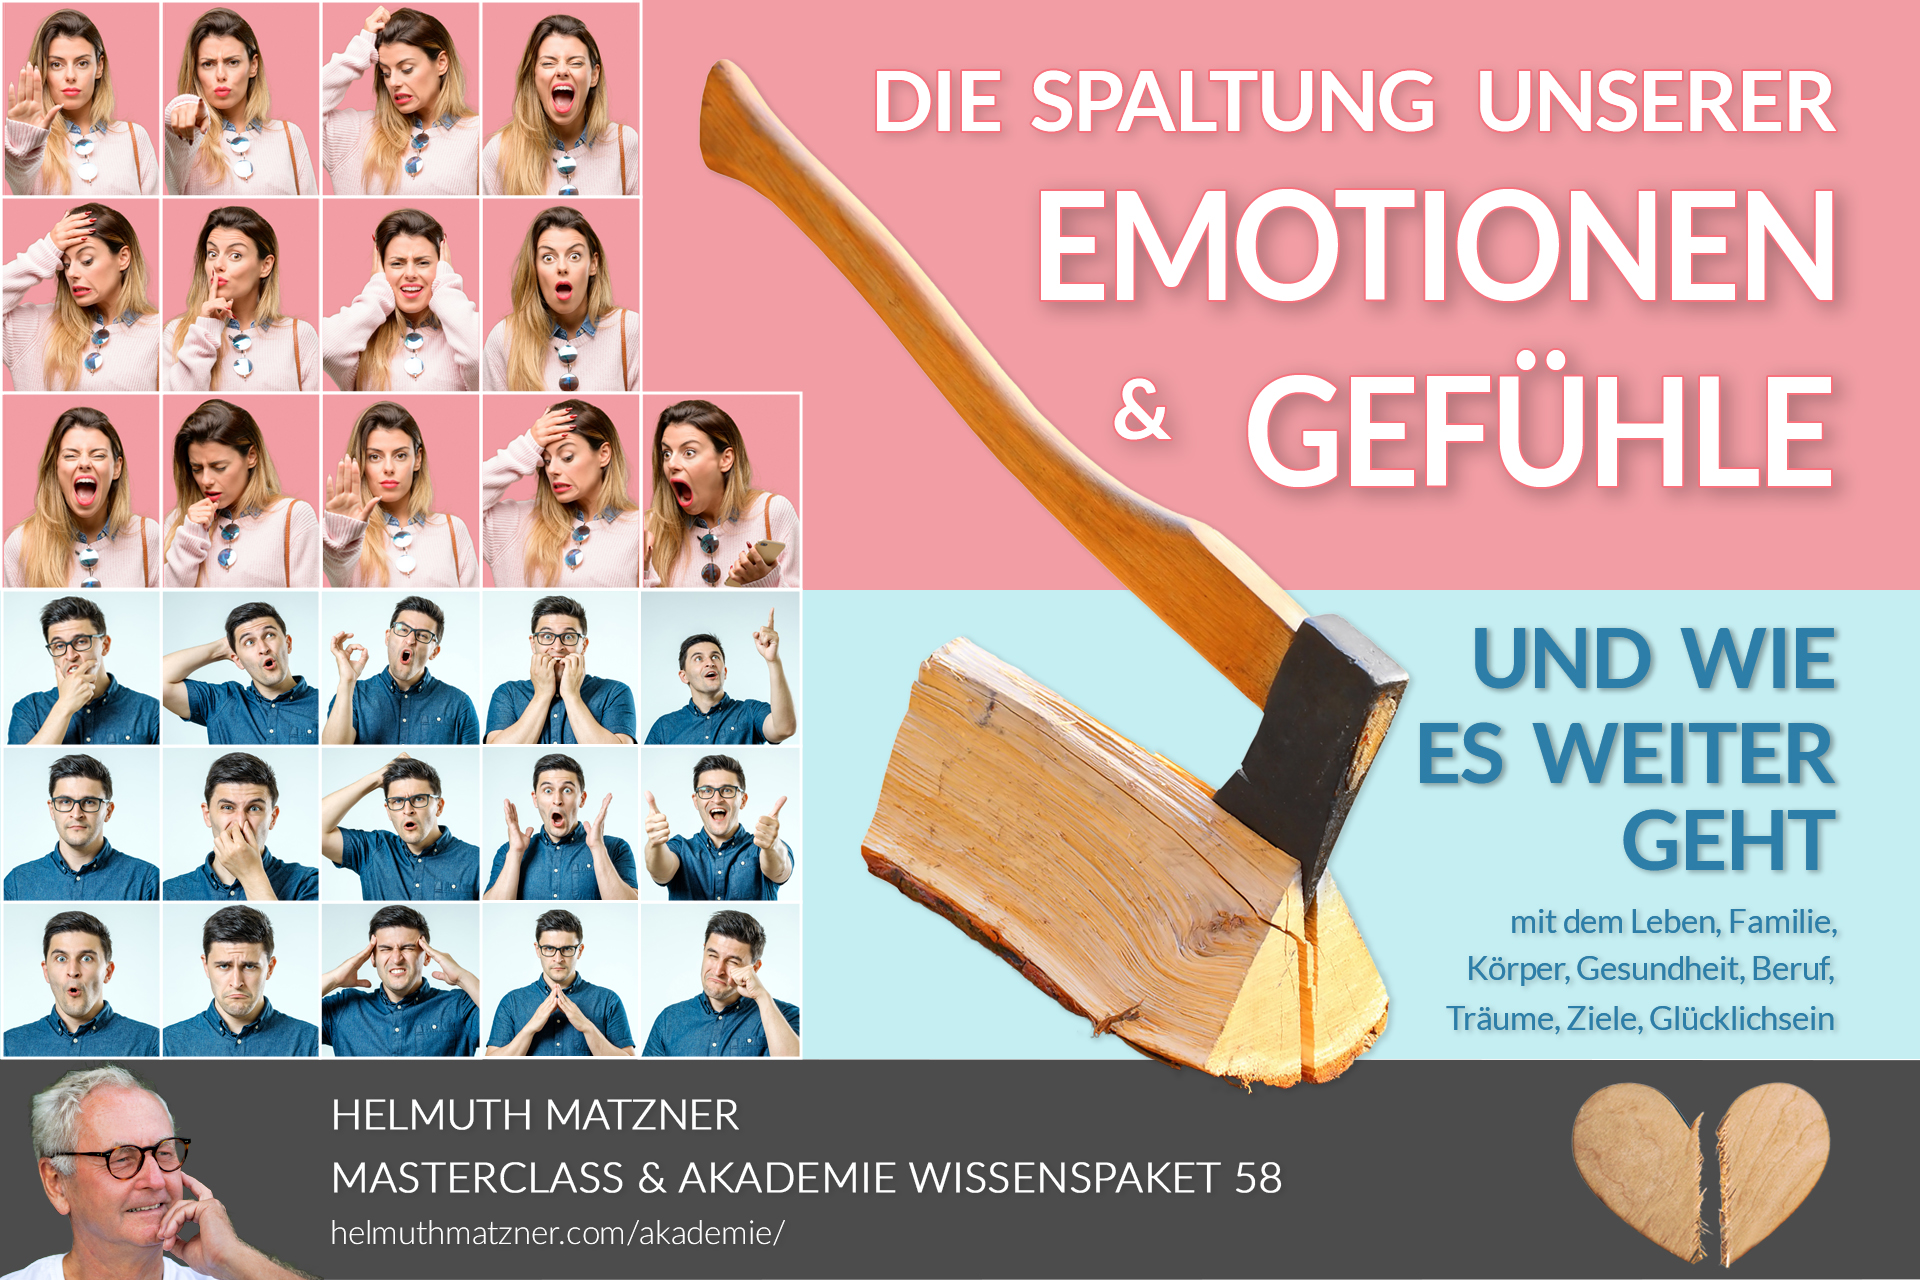 Helmuth Matzner - Masterclass & Akademie Wissenspaket 58 - Emotionen, Gefühle, Spaltung - AKADEMIE - v01